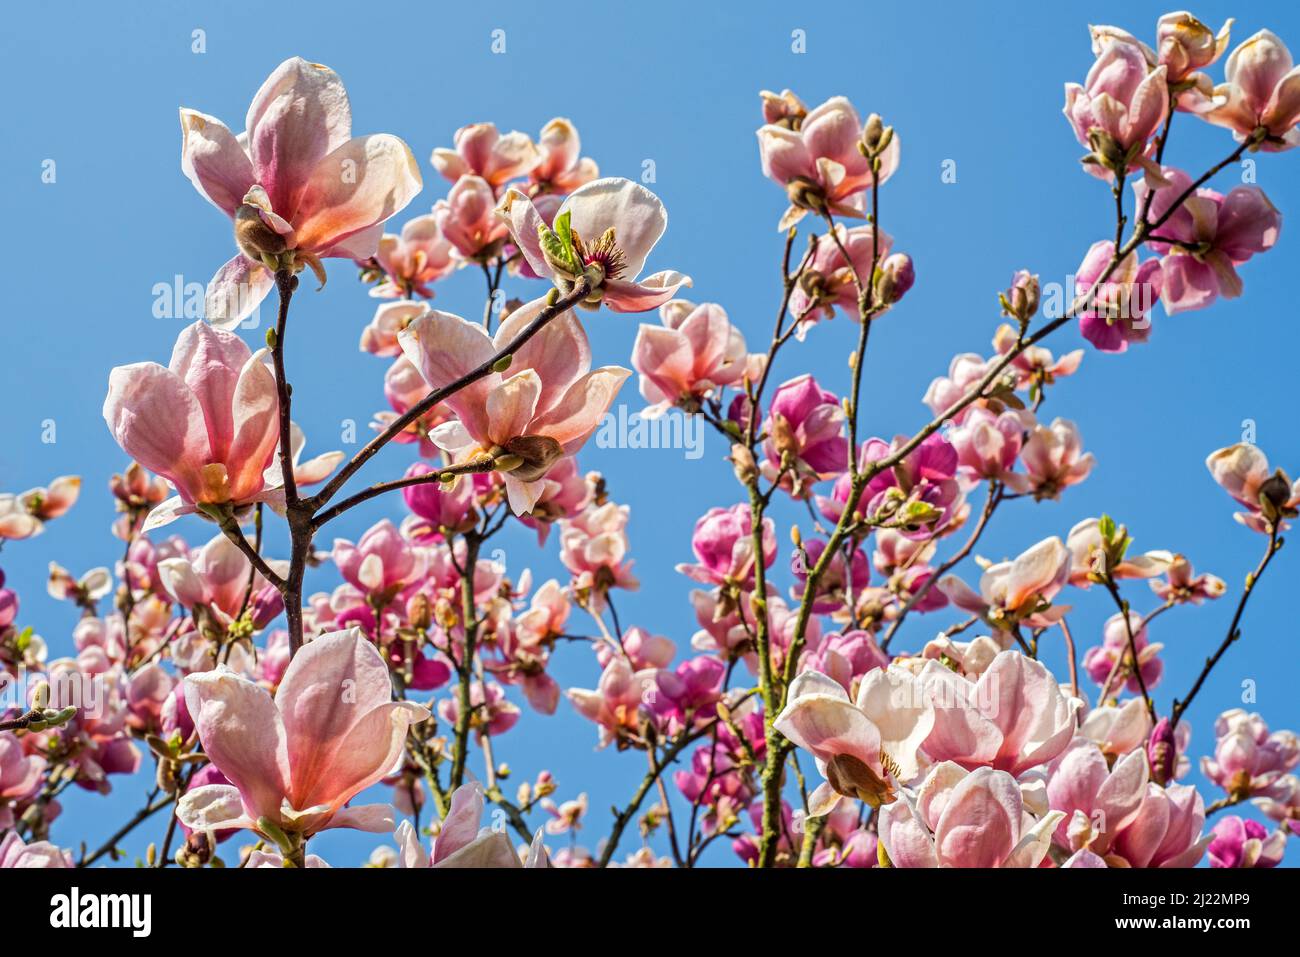 Floraison Rose clair / Magnolia veitchii haricot, hybride entre M. campbellii et M. denudata montrant des fleurs roses au printemps Banque D'Images